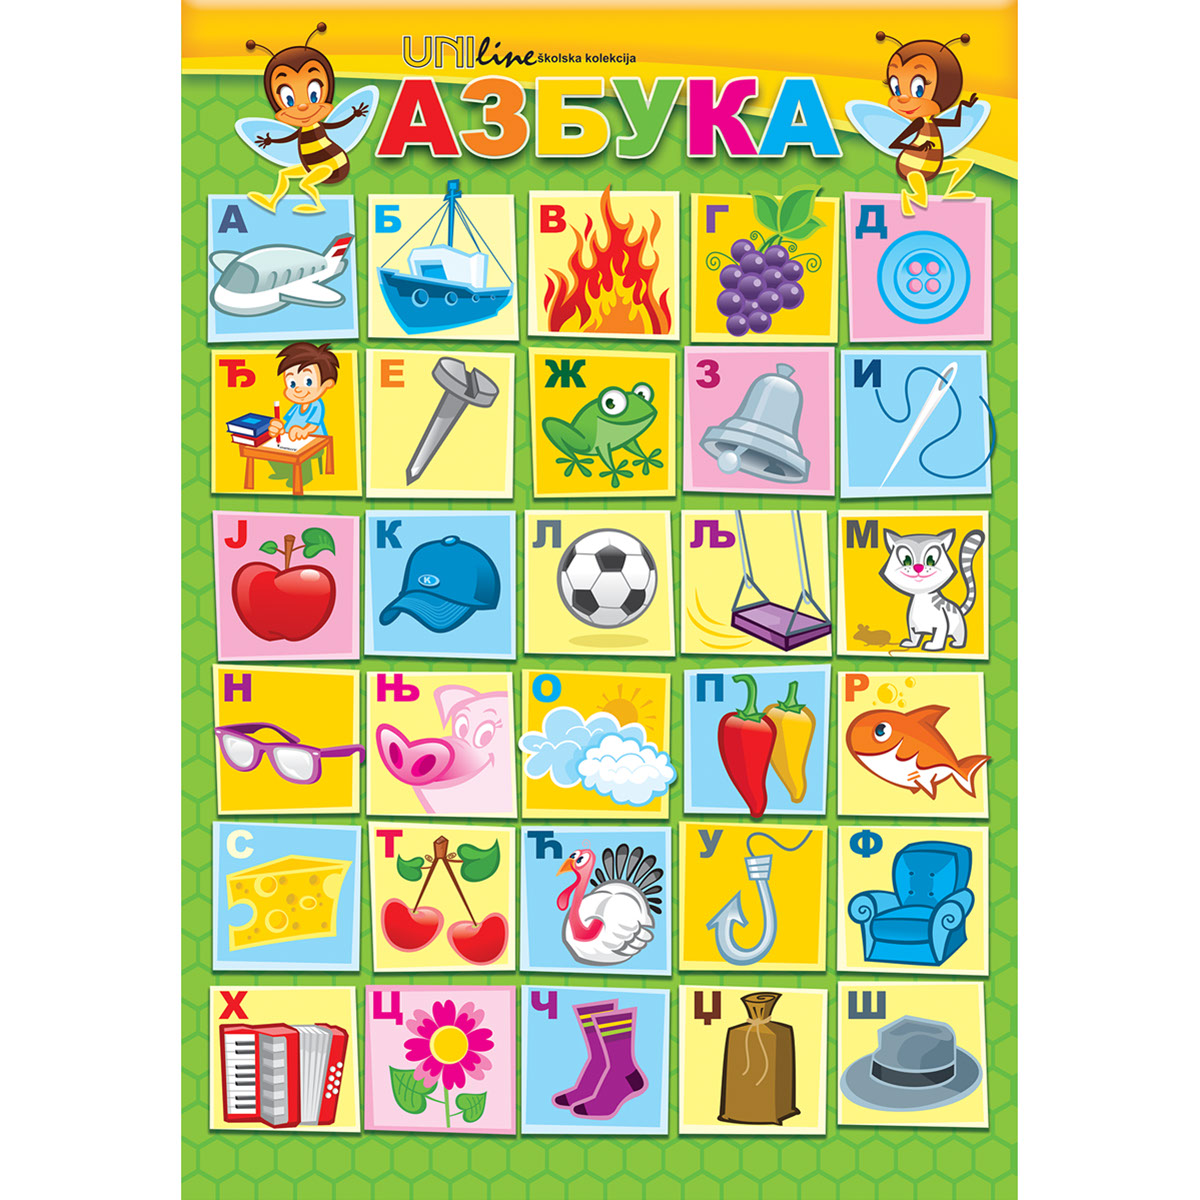 Азбука готов 4. Постер Азбука для детей. Постер алфавит. Постер Азбука для девочек. Магнитный плакат Азбука.